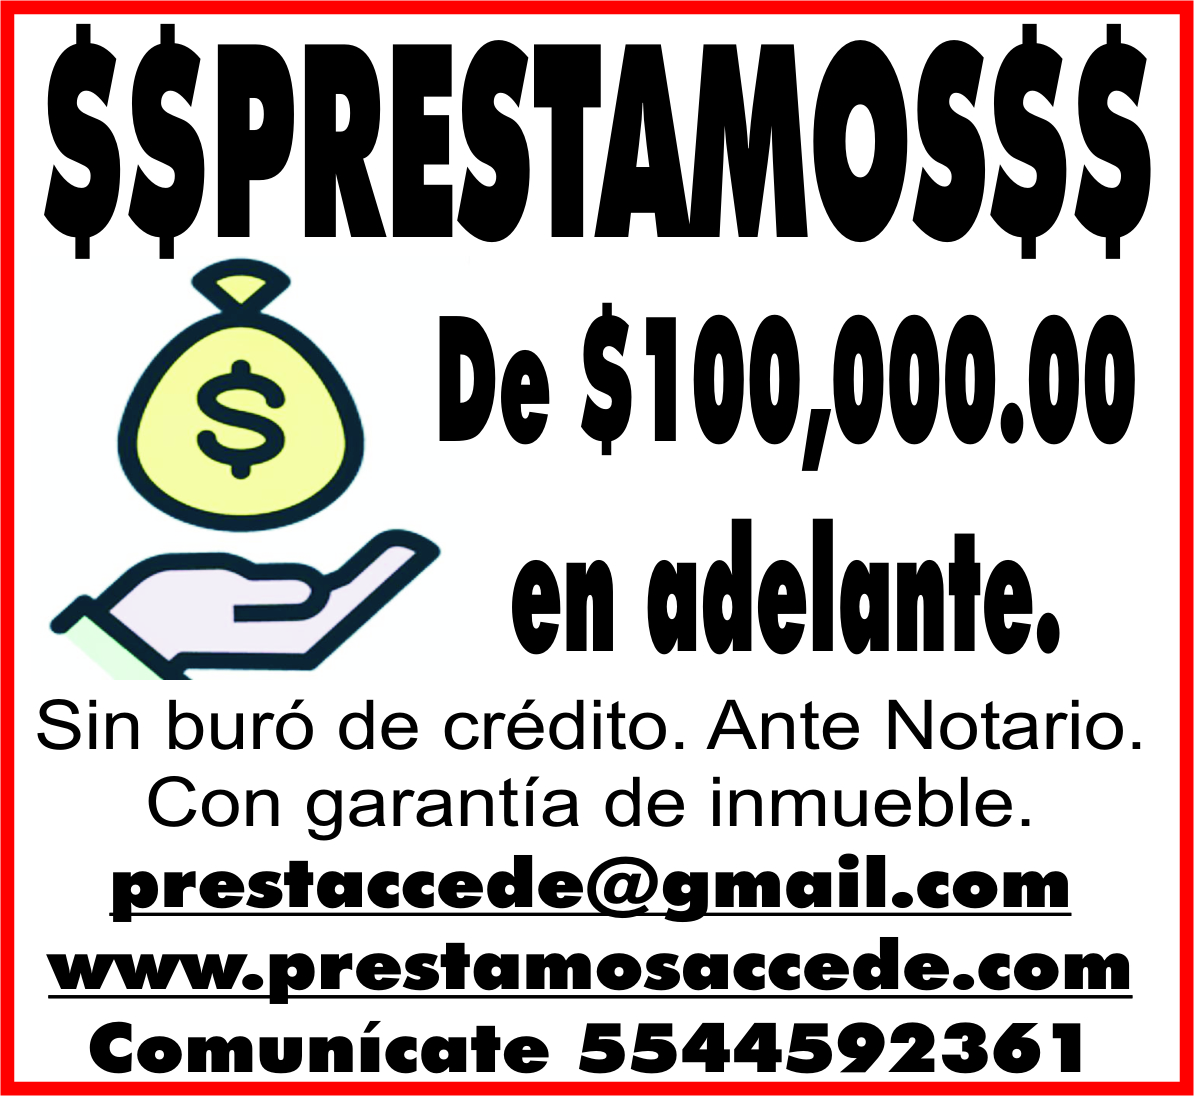 $$PRESTAMOS$$

DE&NBSP;$100 000.00 EN